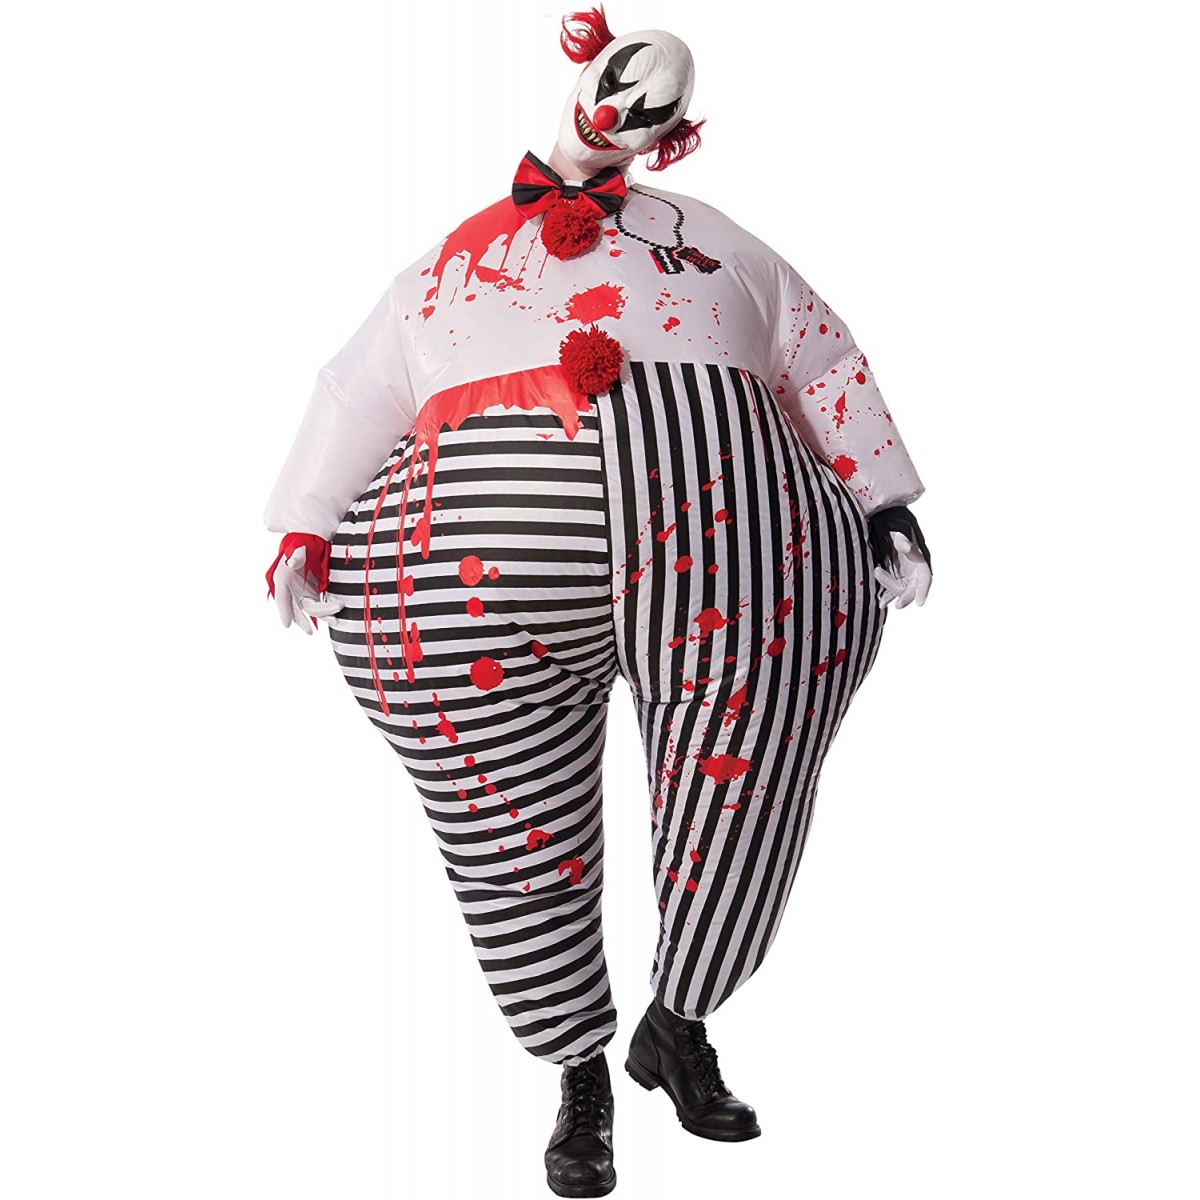 Costume da clown horror gonfiabile, per adulti